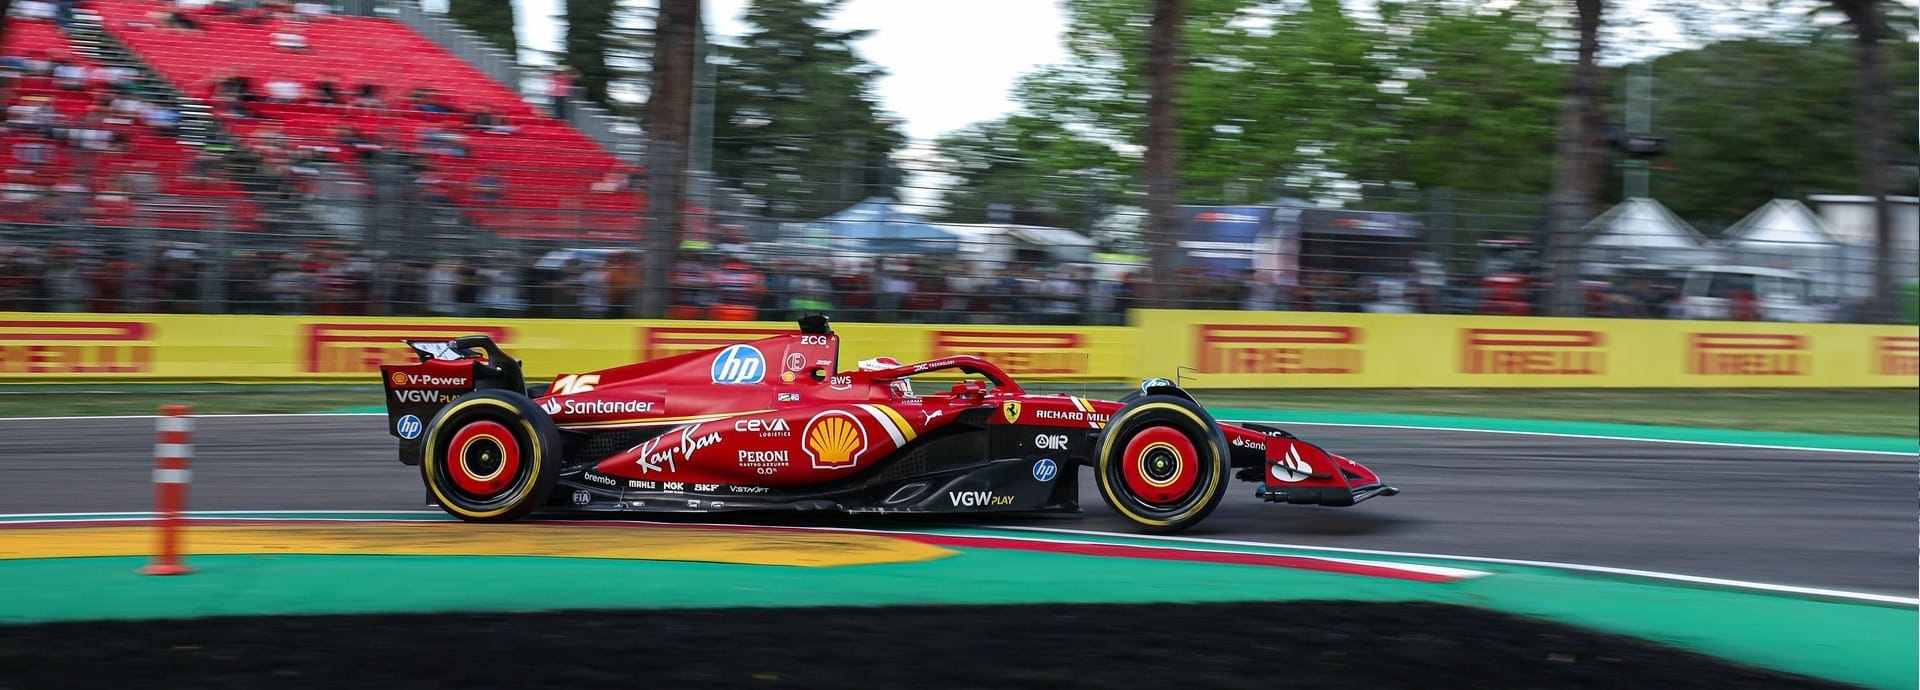 Leclerc lidera segundo treino livre em Imola; Verstappen é sétimo